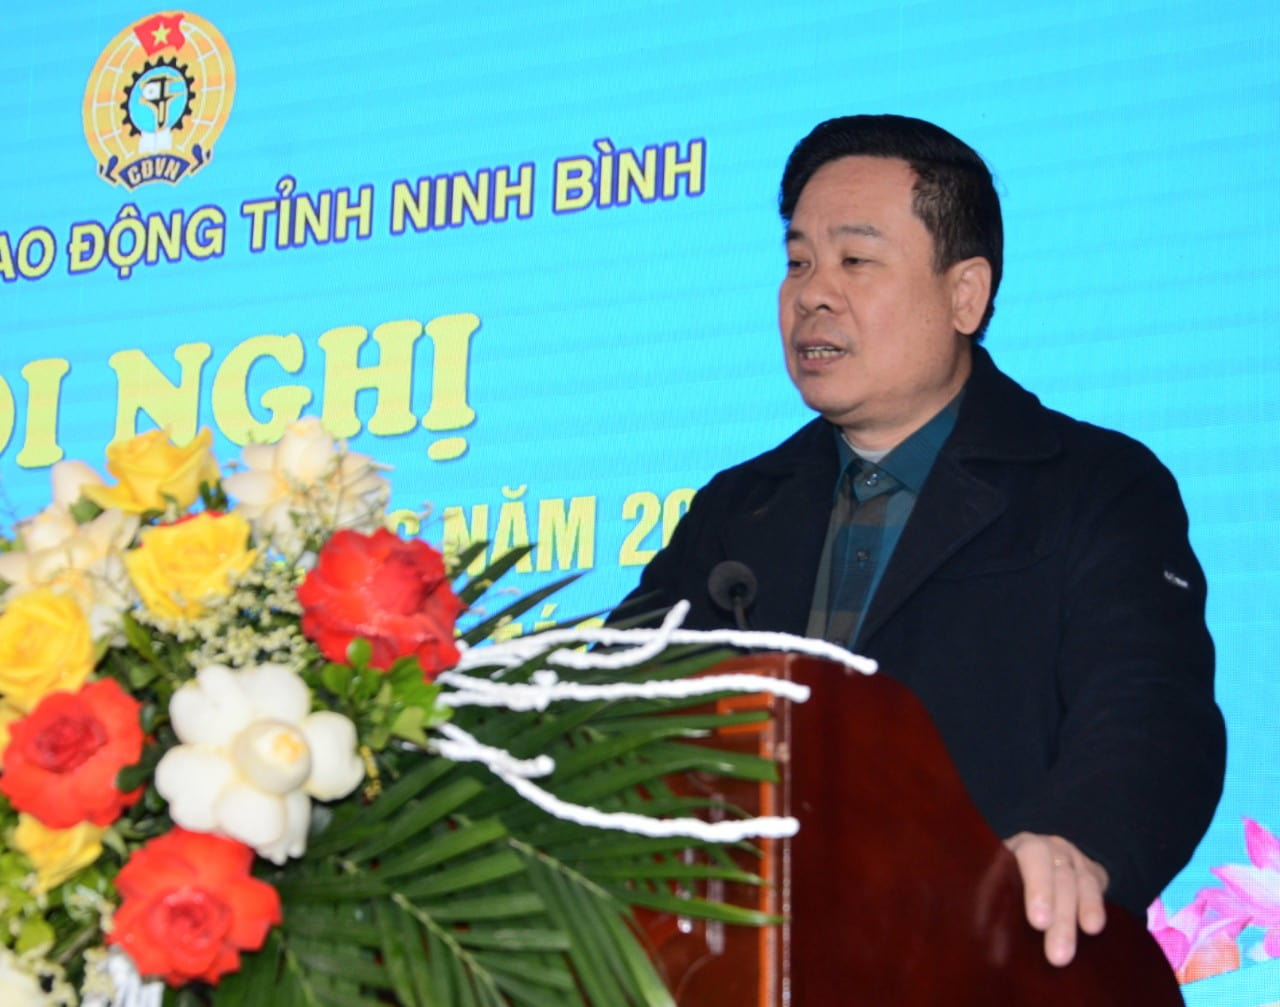 Ông Dương Đức Khanh - Chủ tịch LĐLĐ tỉnh Ninh Bình phát biểu khai mạc hội nghị. Ảnh: Nguyễn Trường